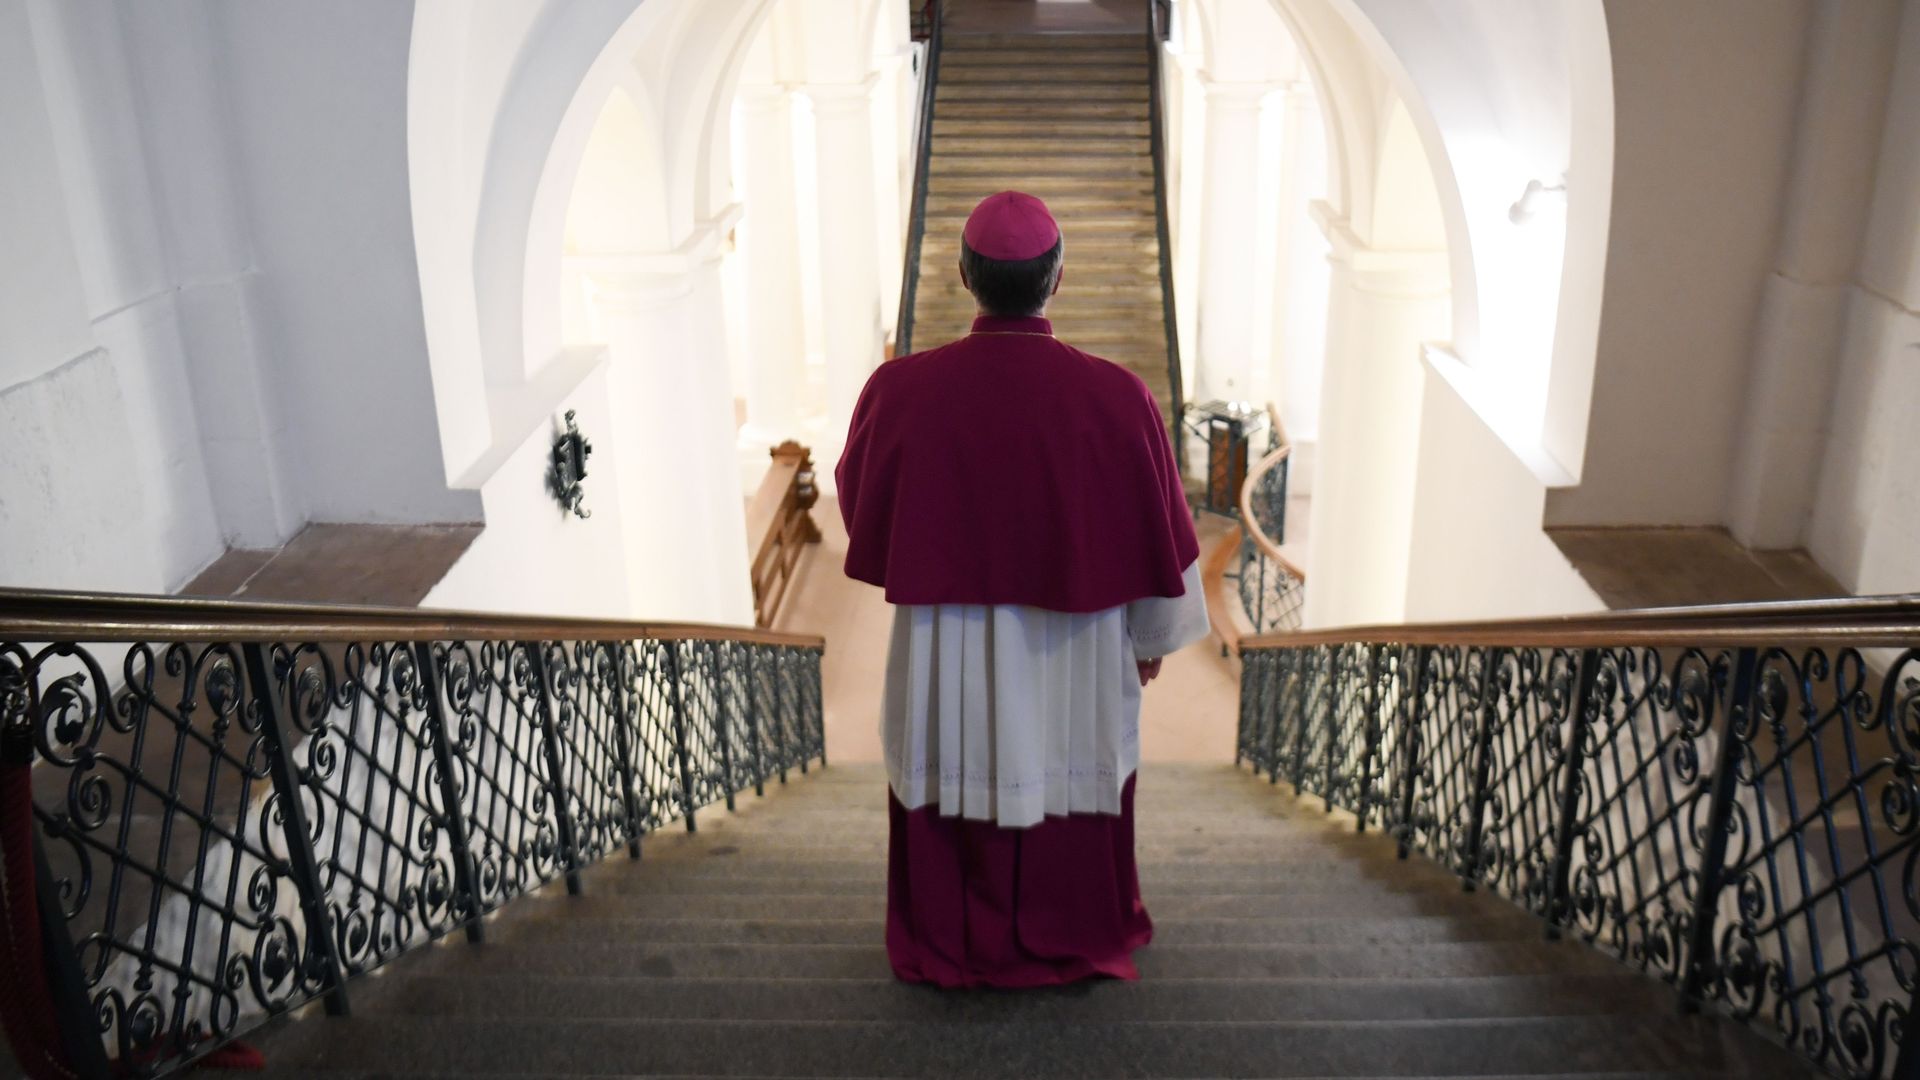 A German bishop is seen from behind.